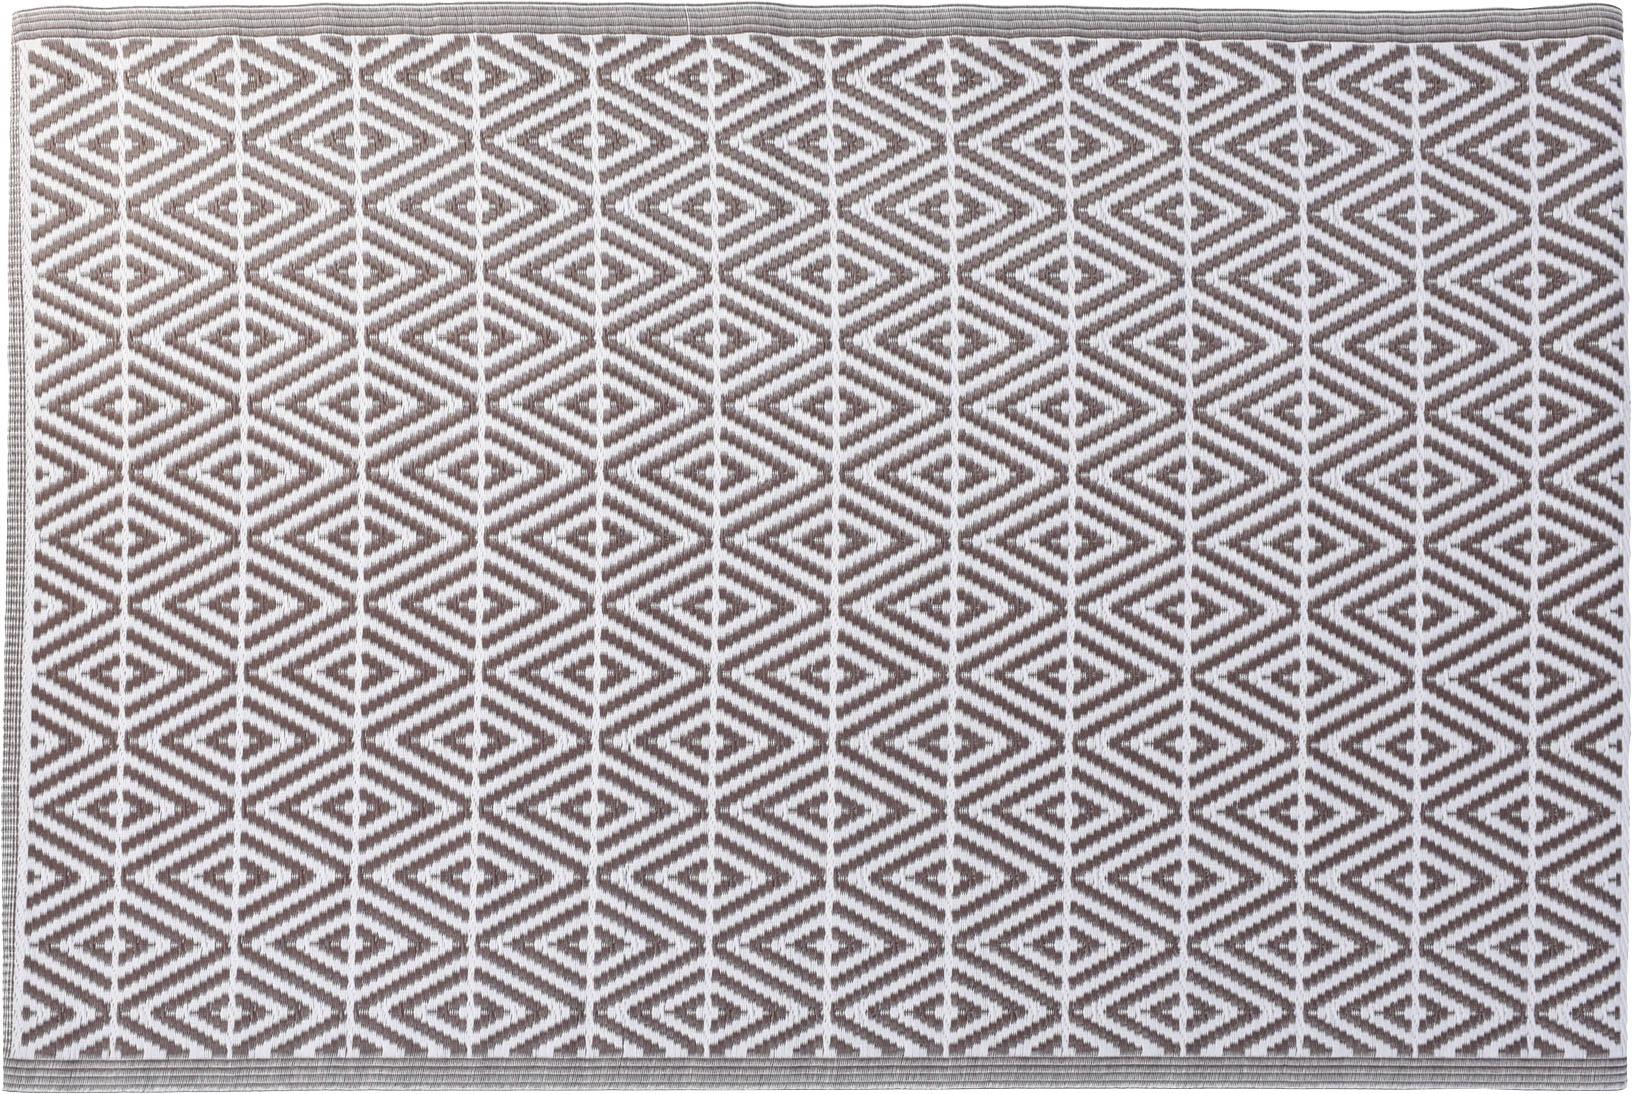 Outdoorteppich Braun/Weiß 120x180 cm - Braun/Weiß, Basics, Textil (120/180cm)